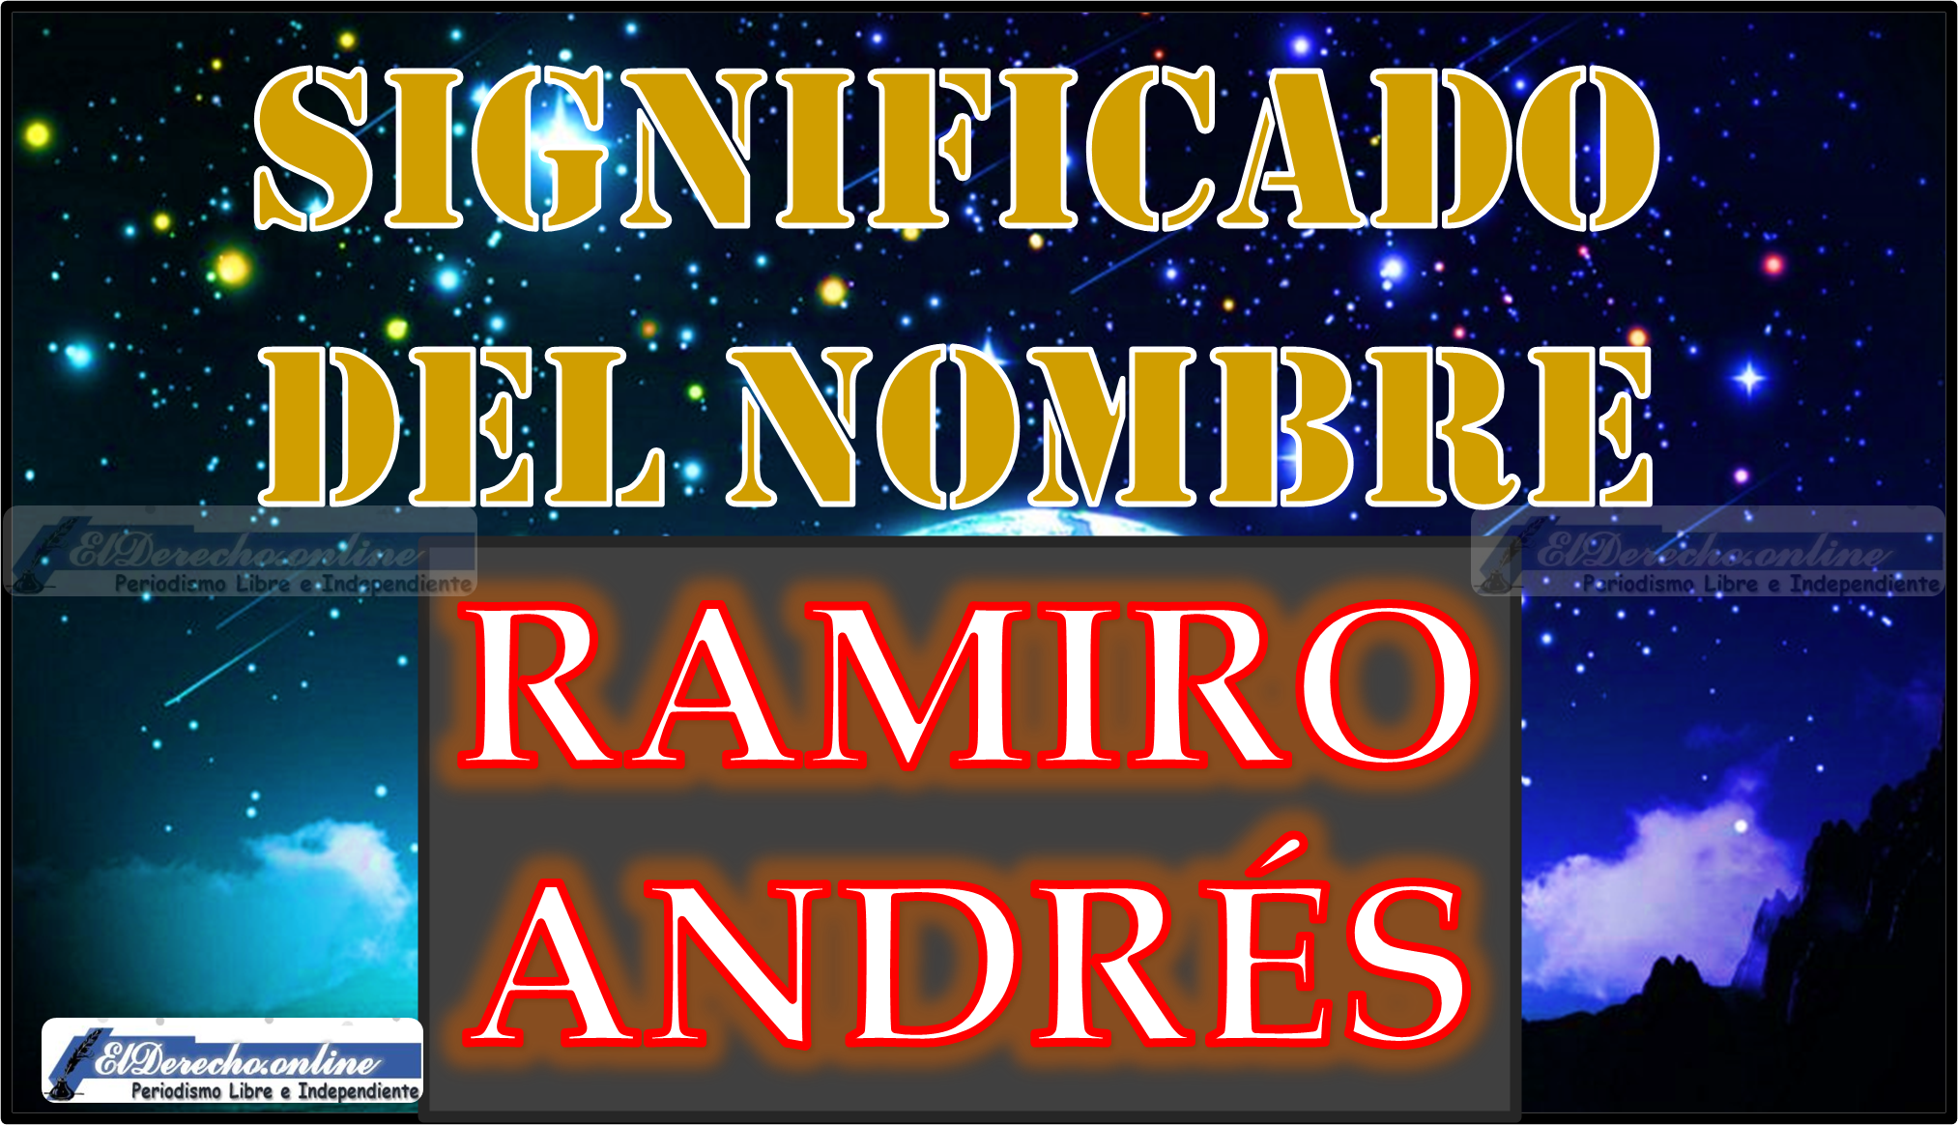 Significado del nombre Ramiro Andrés, su origen y más